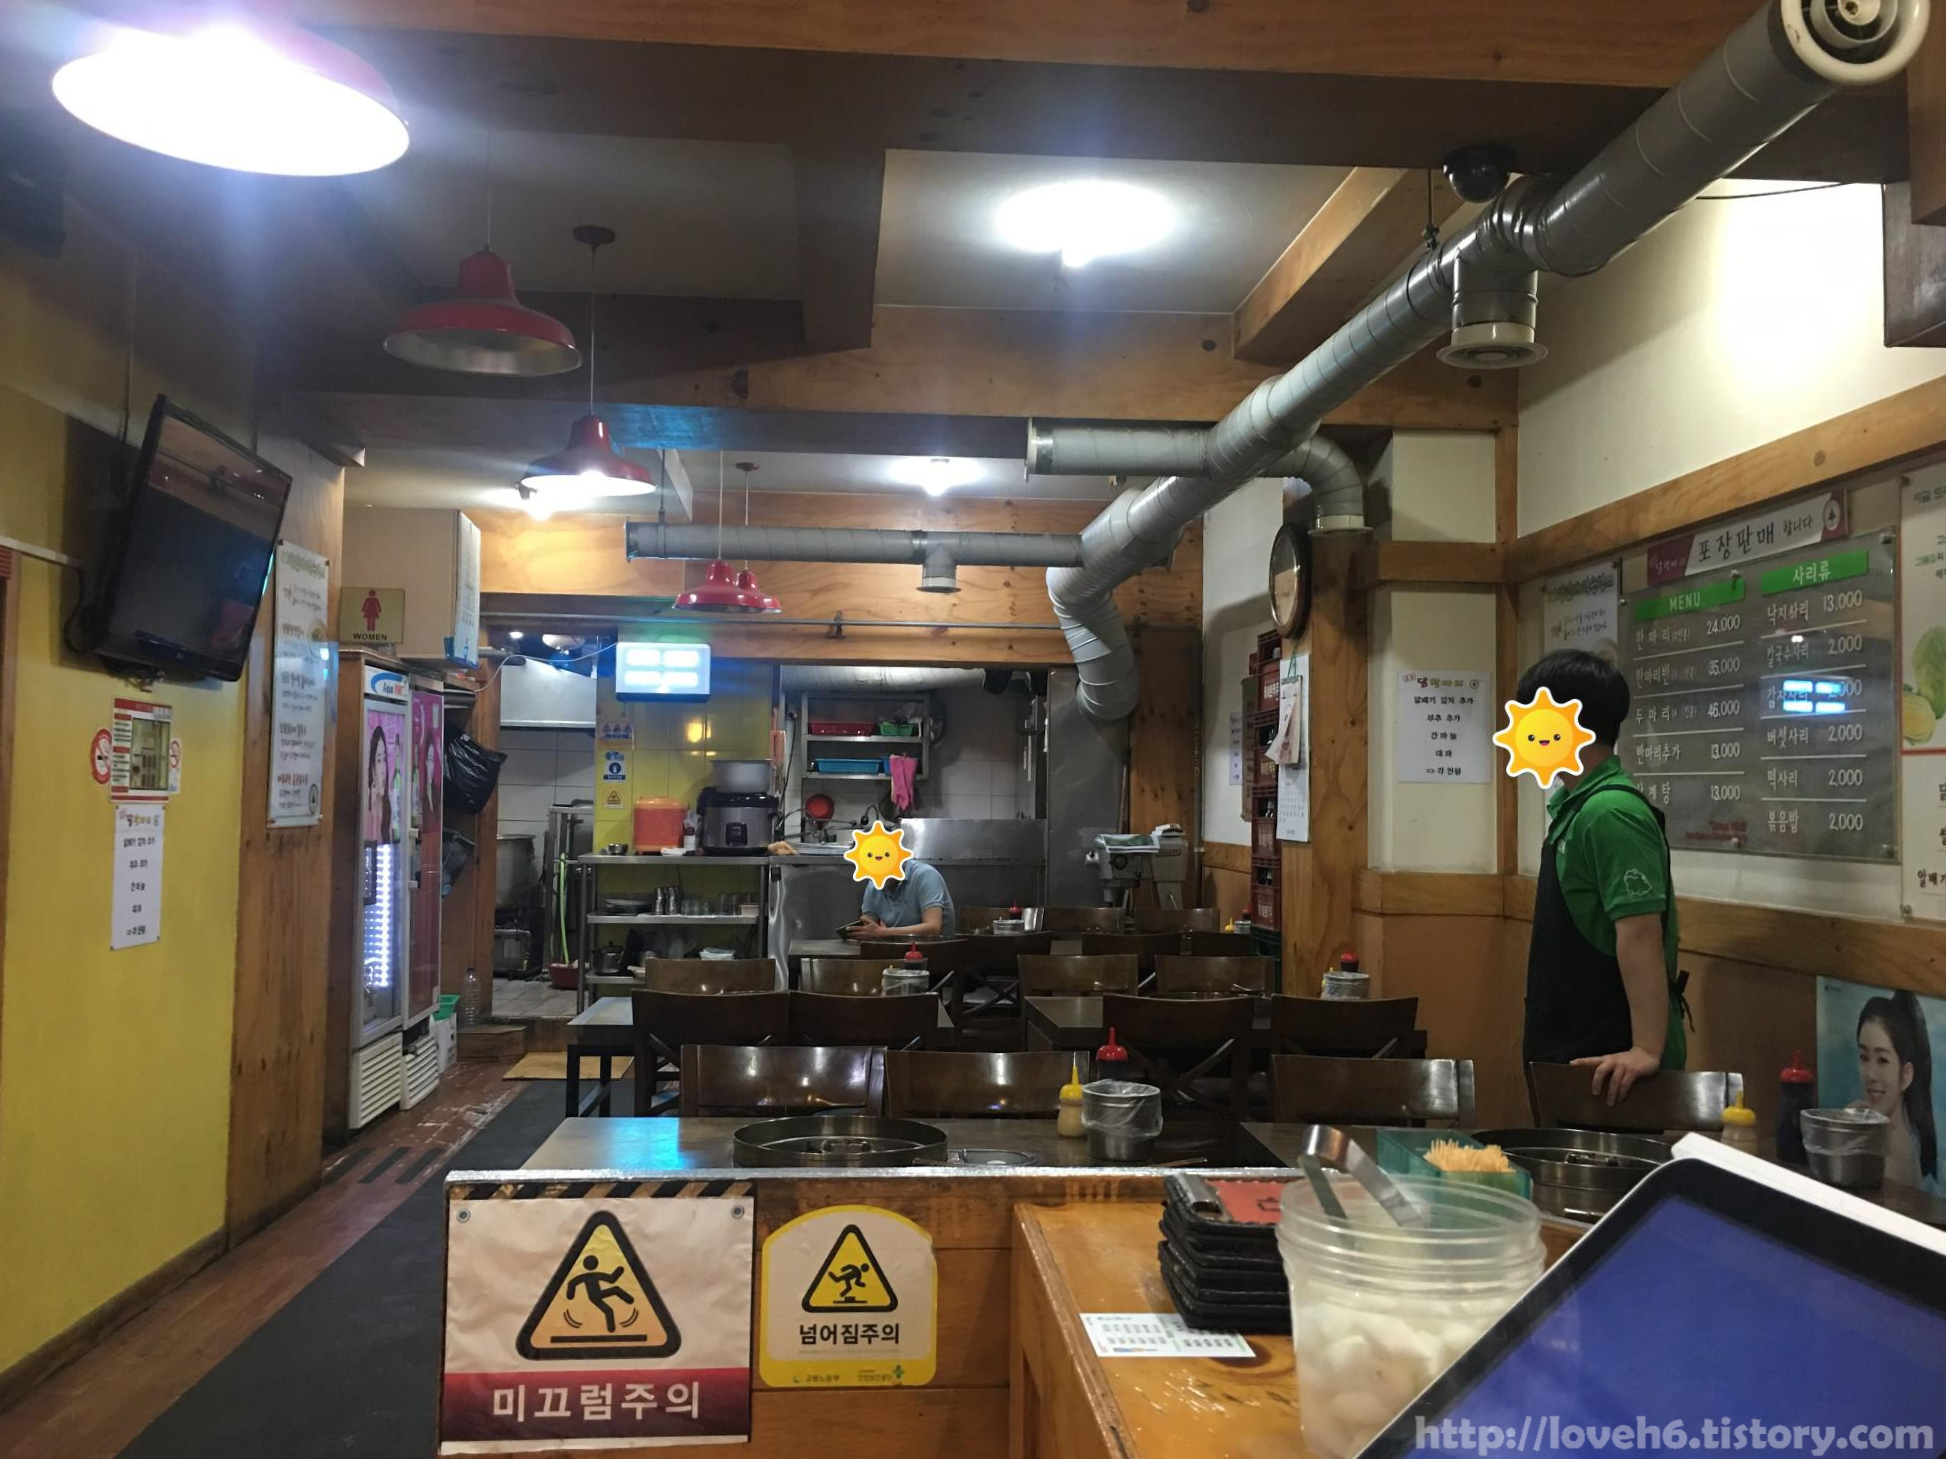 
정솔 닭한마리 영등포 본점/Jeongsol Chicken Hanmari,Yeongdeungpo Main Branch/1층에 주방이 있고 들어갔는데

직원분이 2층으로 안내해주셨어요
